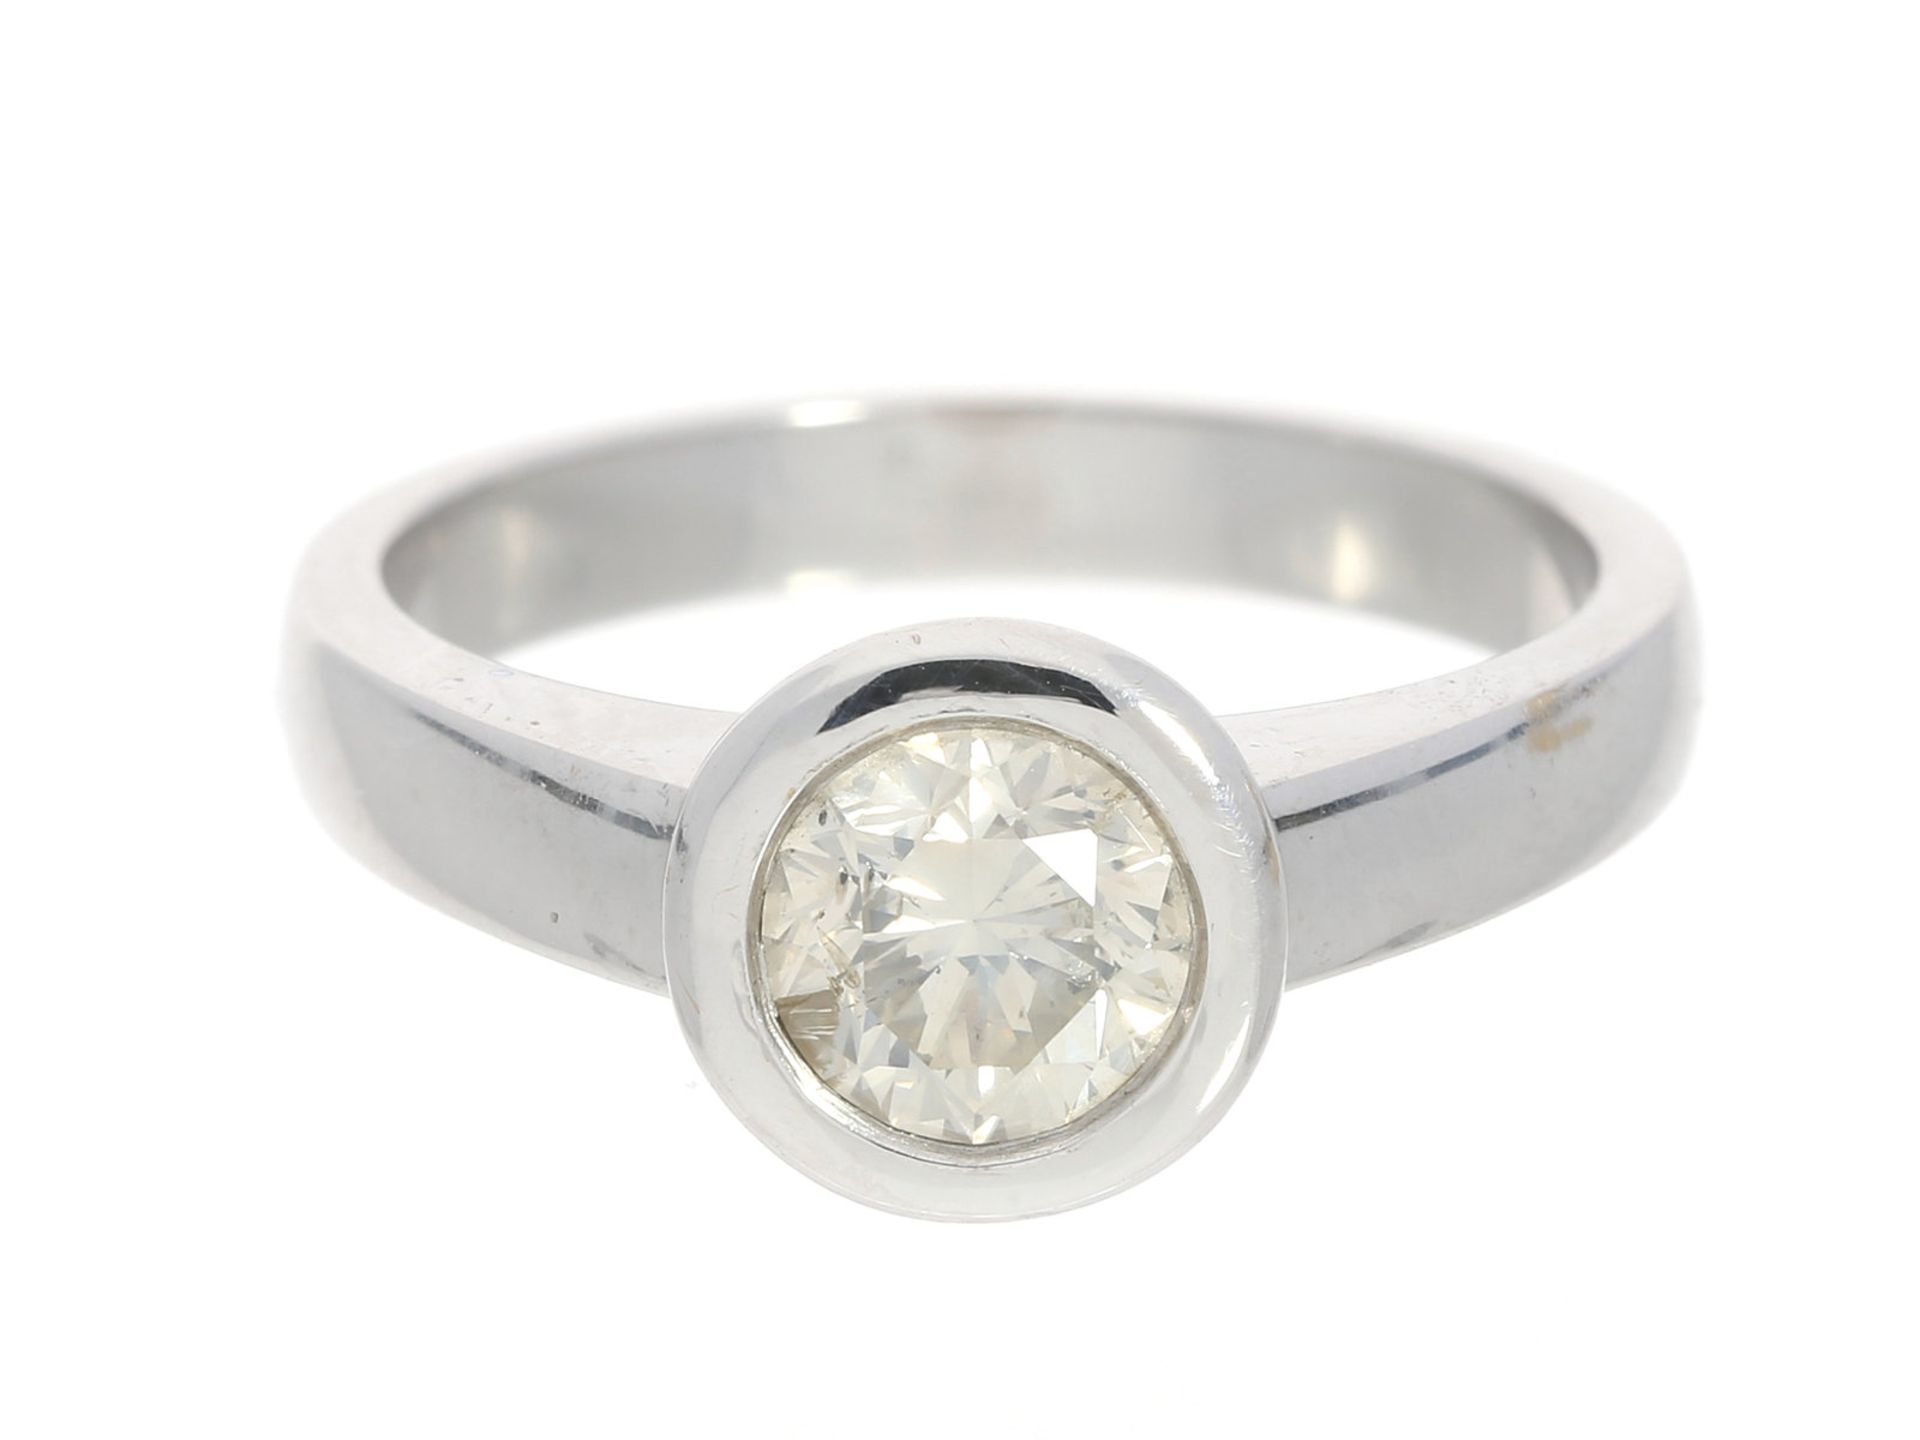 Ring: hochwertiger Solitär/Diamantring mit 1-Karäter, 18K WeißgoldCa. Ø18mm, RG56, ca. 6,3g, 18K